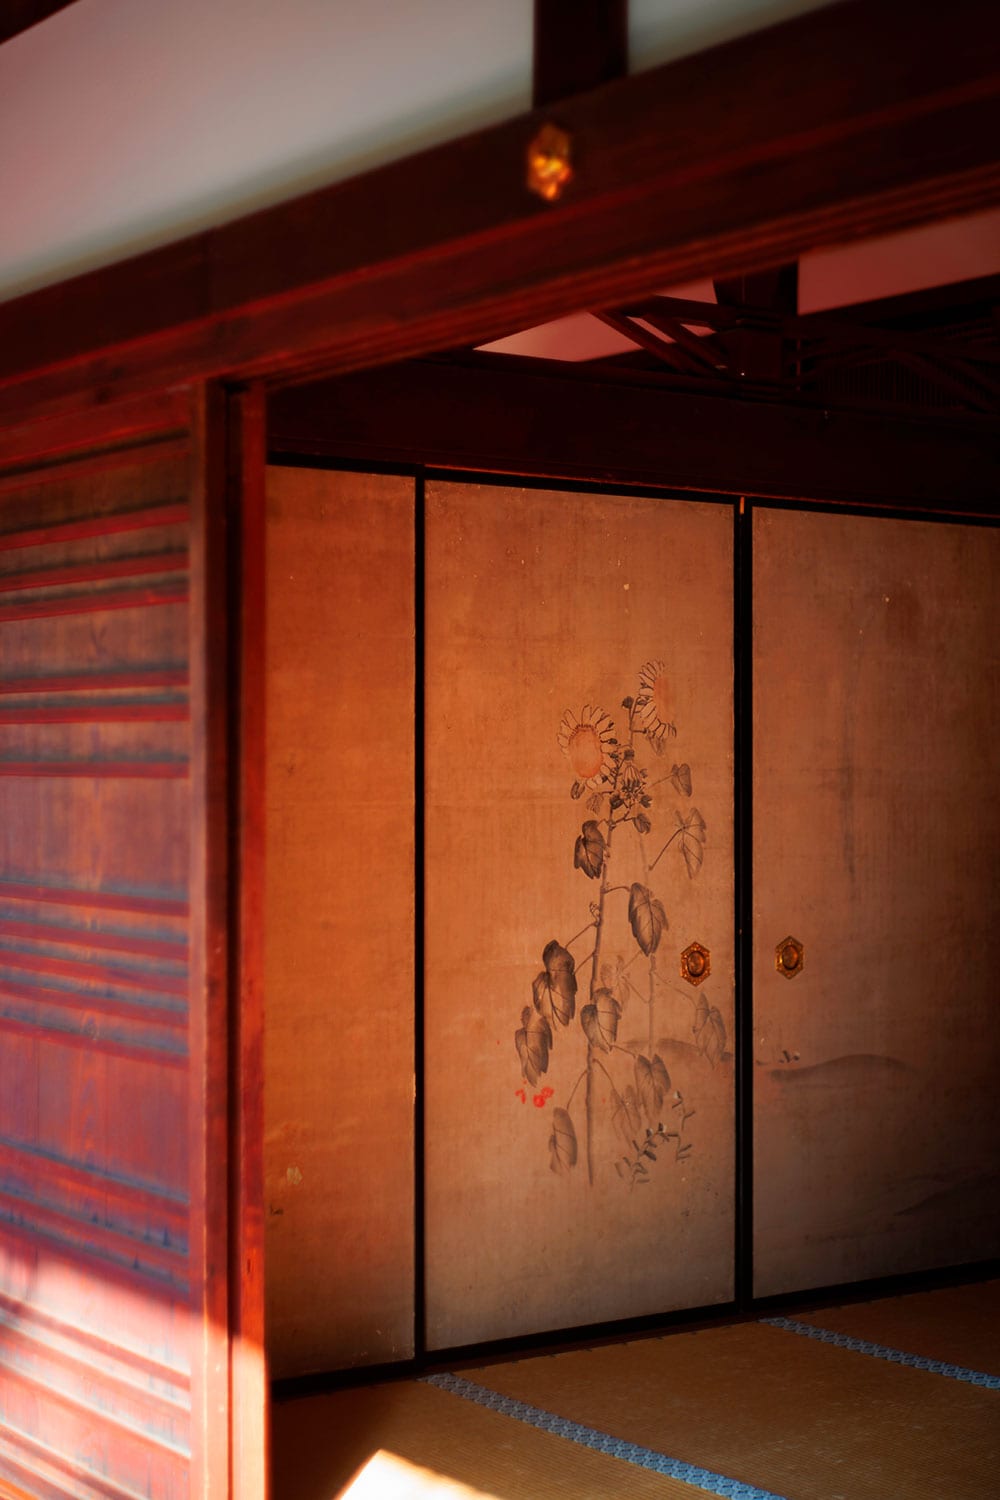 柴田是真によるひまわりの襖絵も間近で鑑賞。修業を終えたばかりの弱冠24歳の若者が、江戸時代に描いたとは思えない大胆な図柄だ。